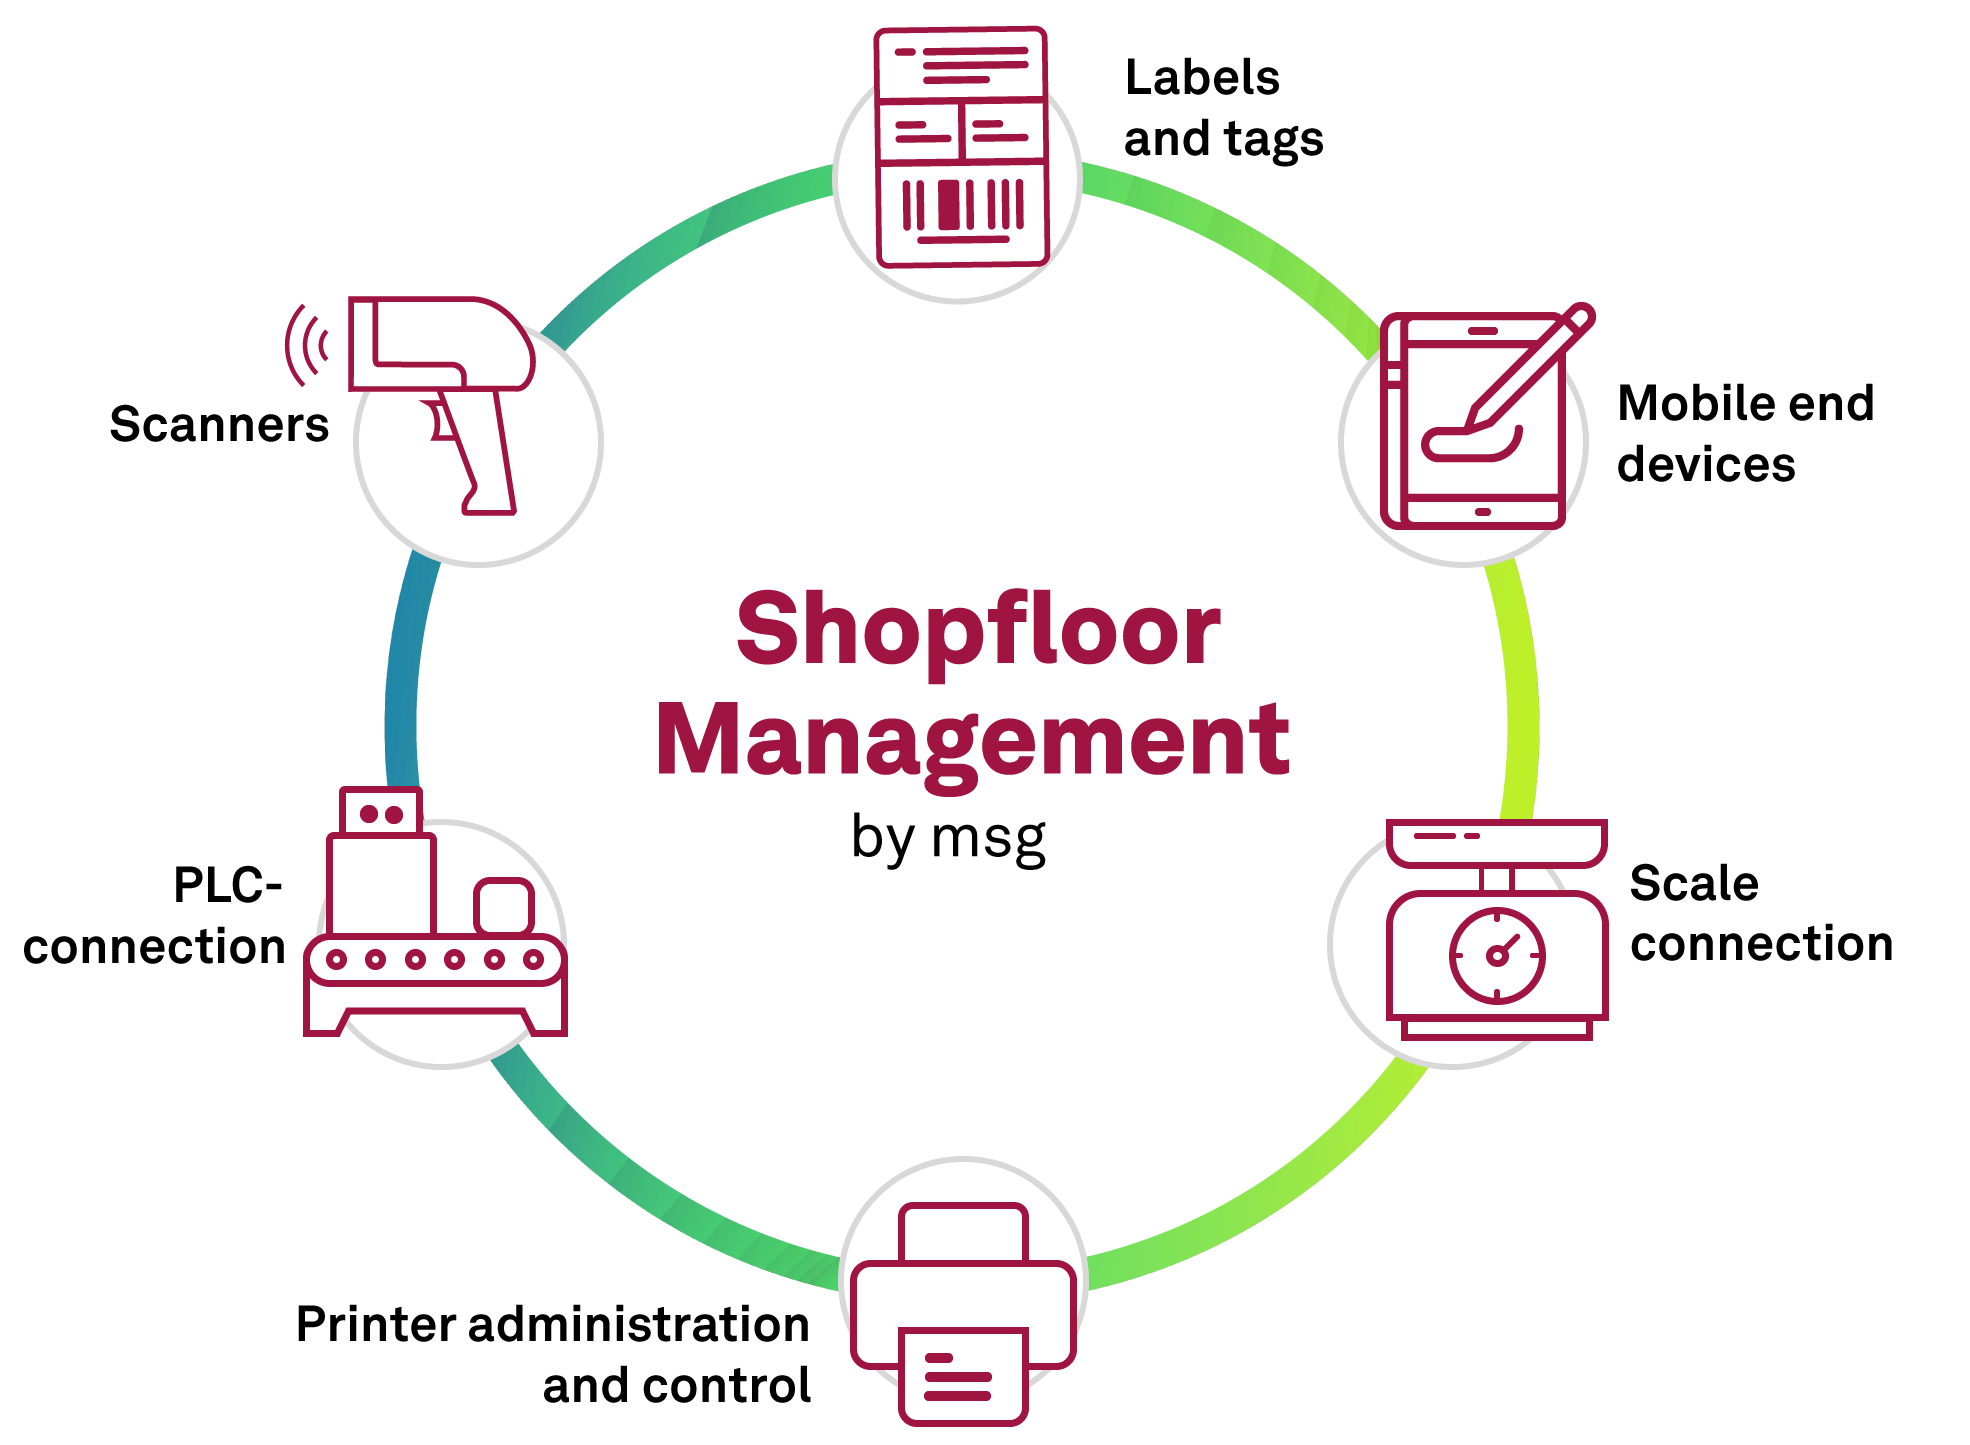 msg food advisors Shopfloor